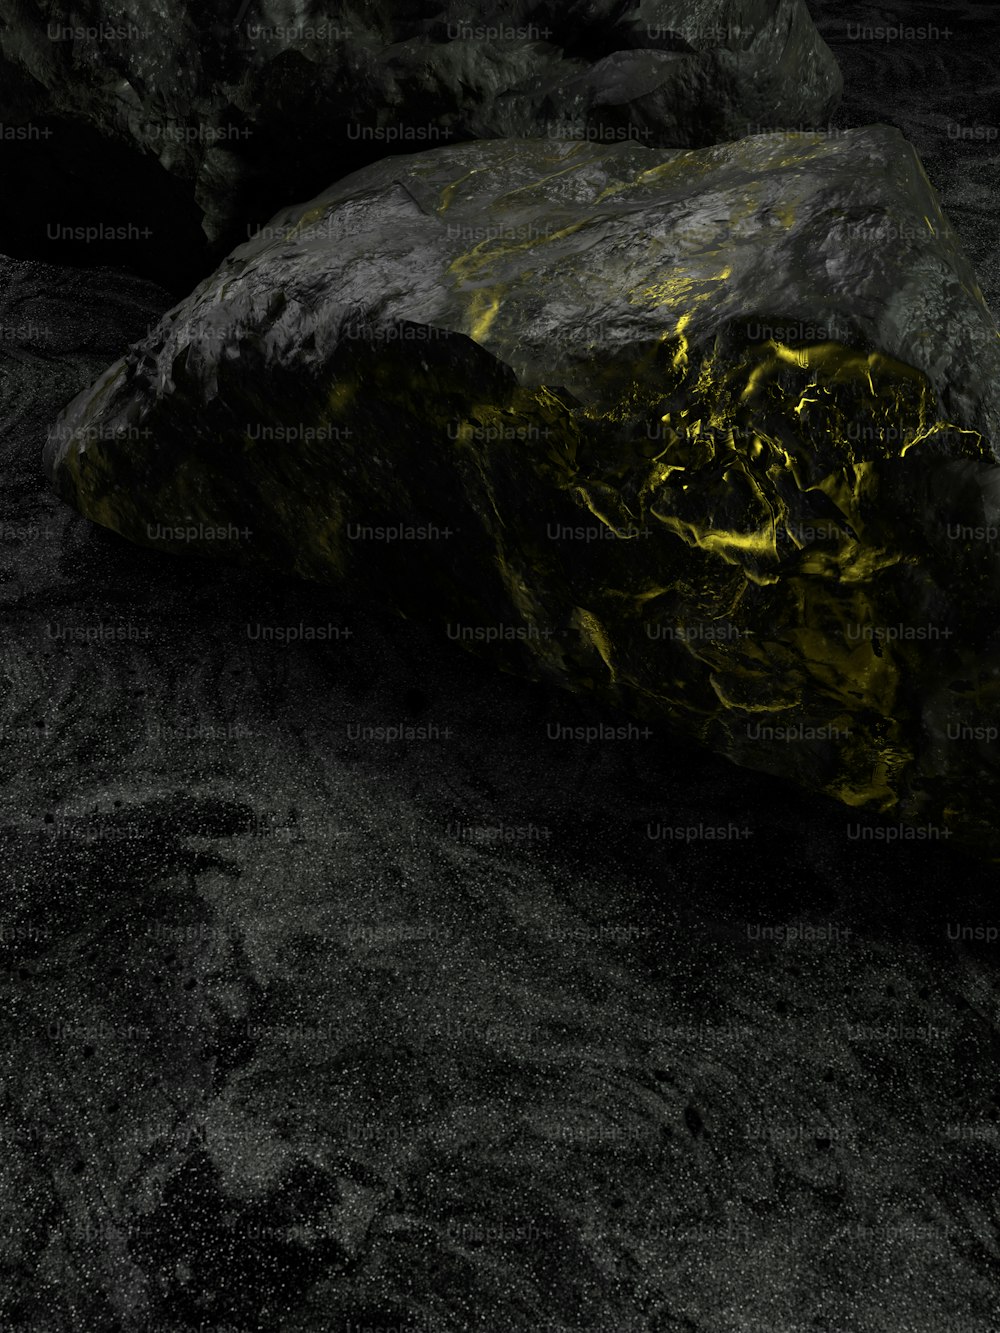 黄色い物質が付着した岩